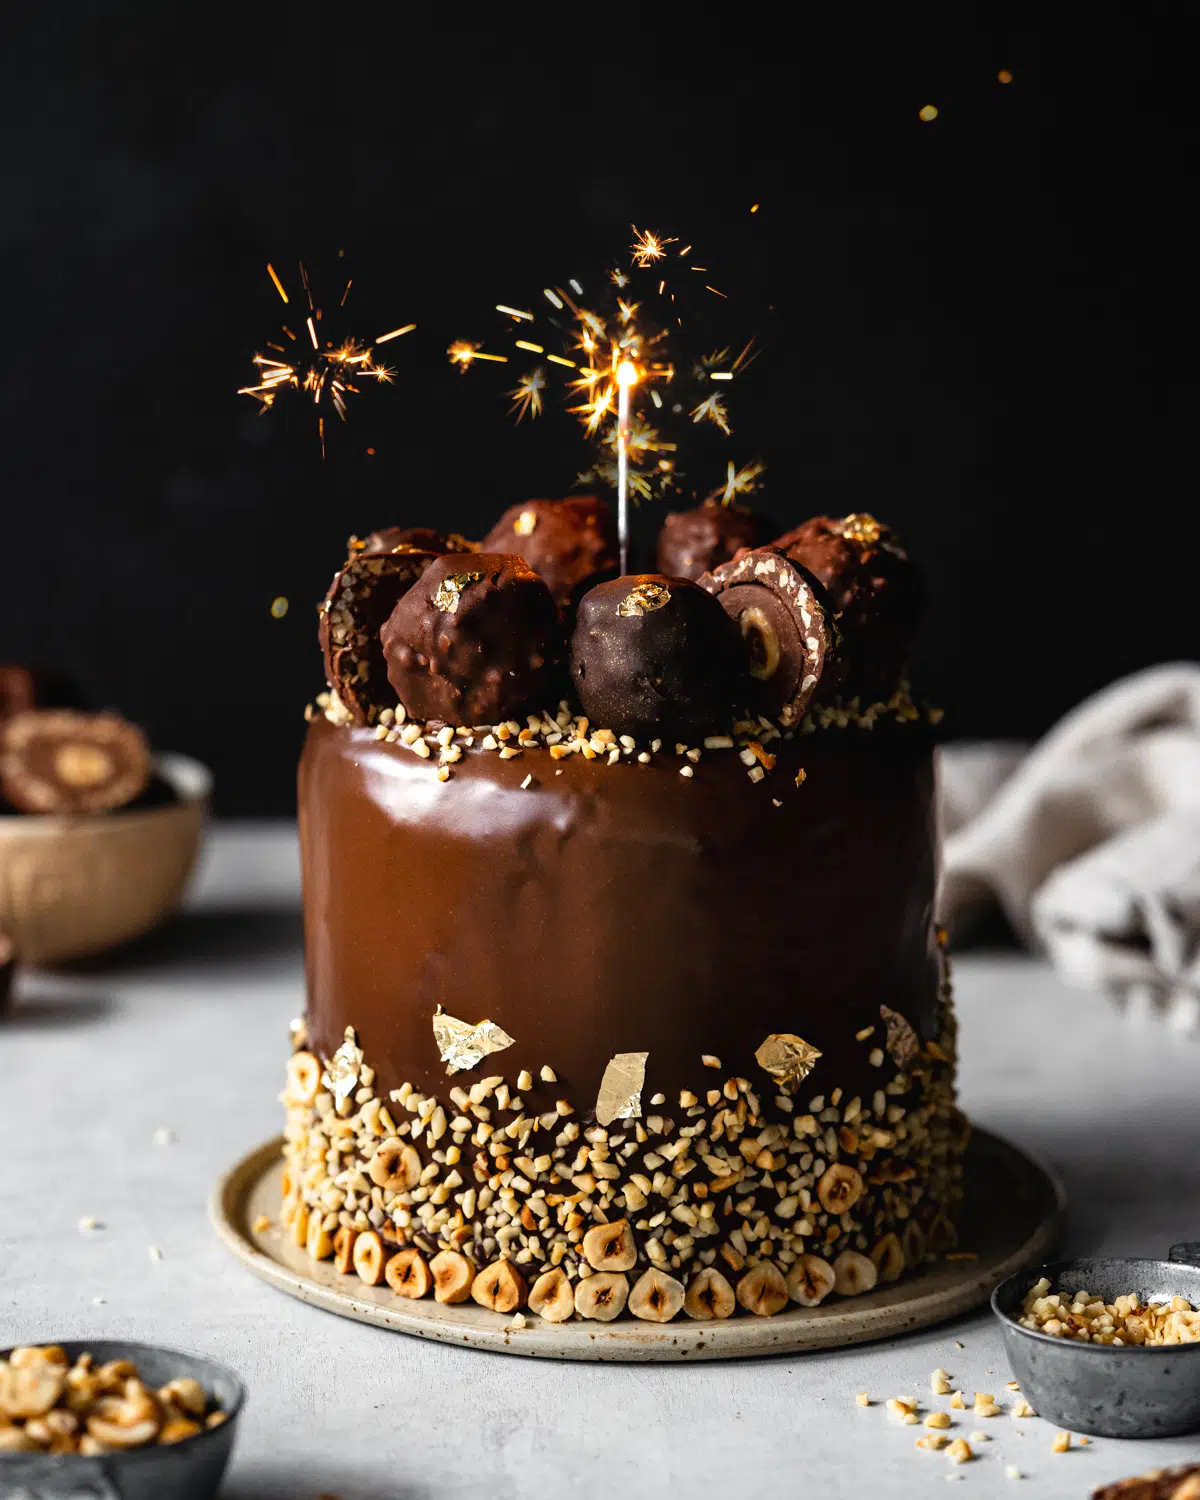 chocolate hazelnut cake with ferrero rocher and sparklers.